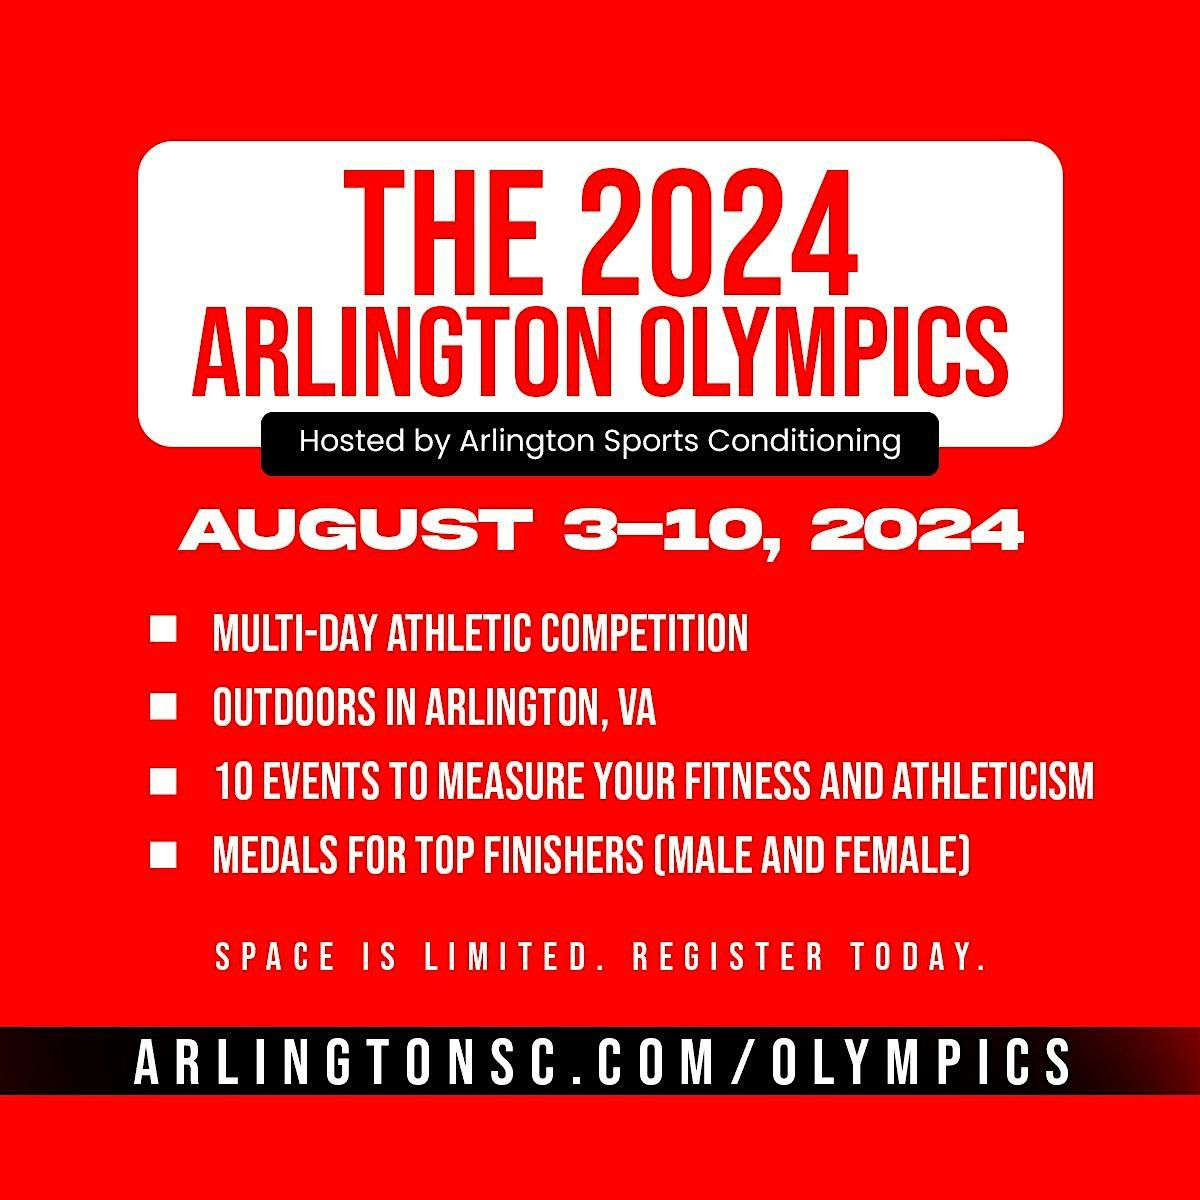 The 2024 Arlington Olympics: Day 5 of 5